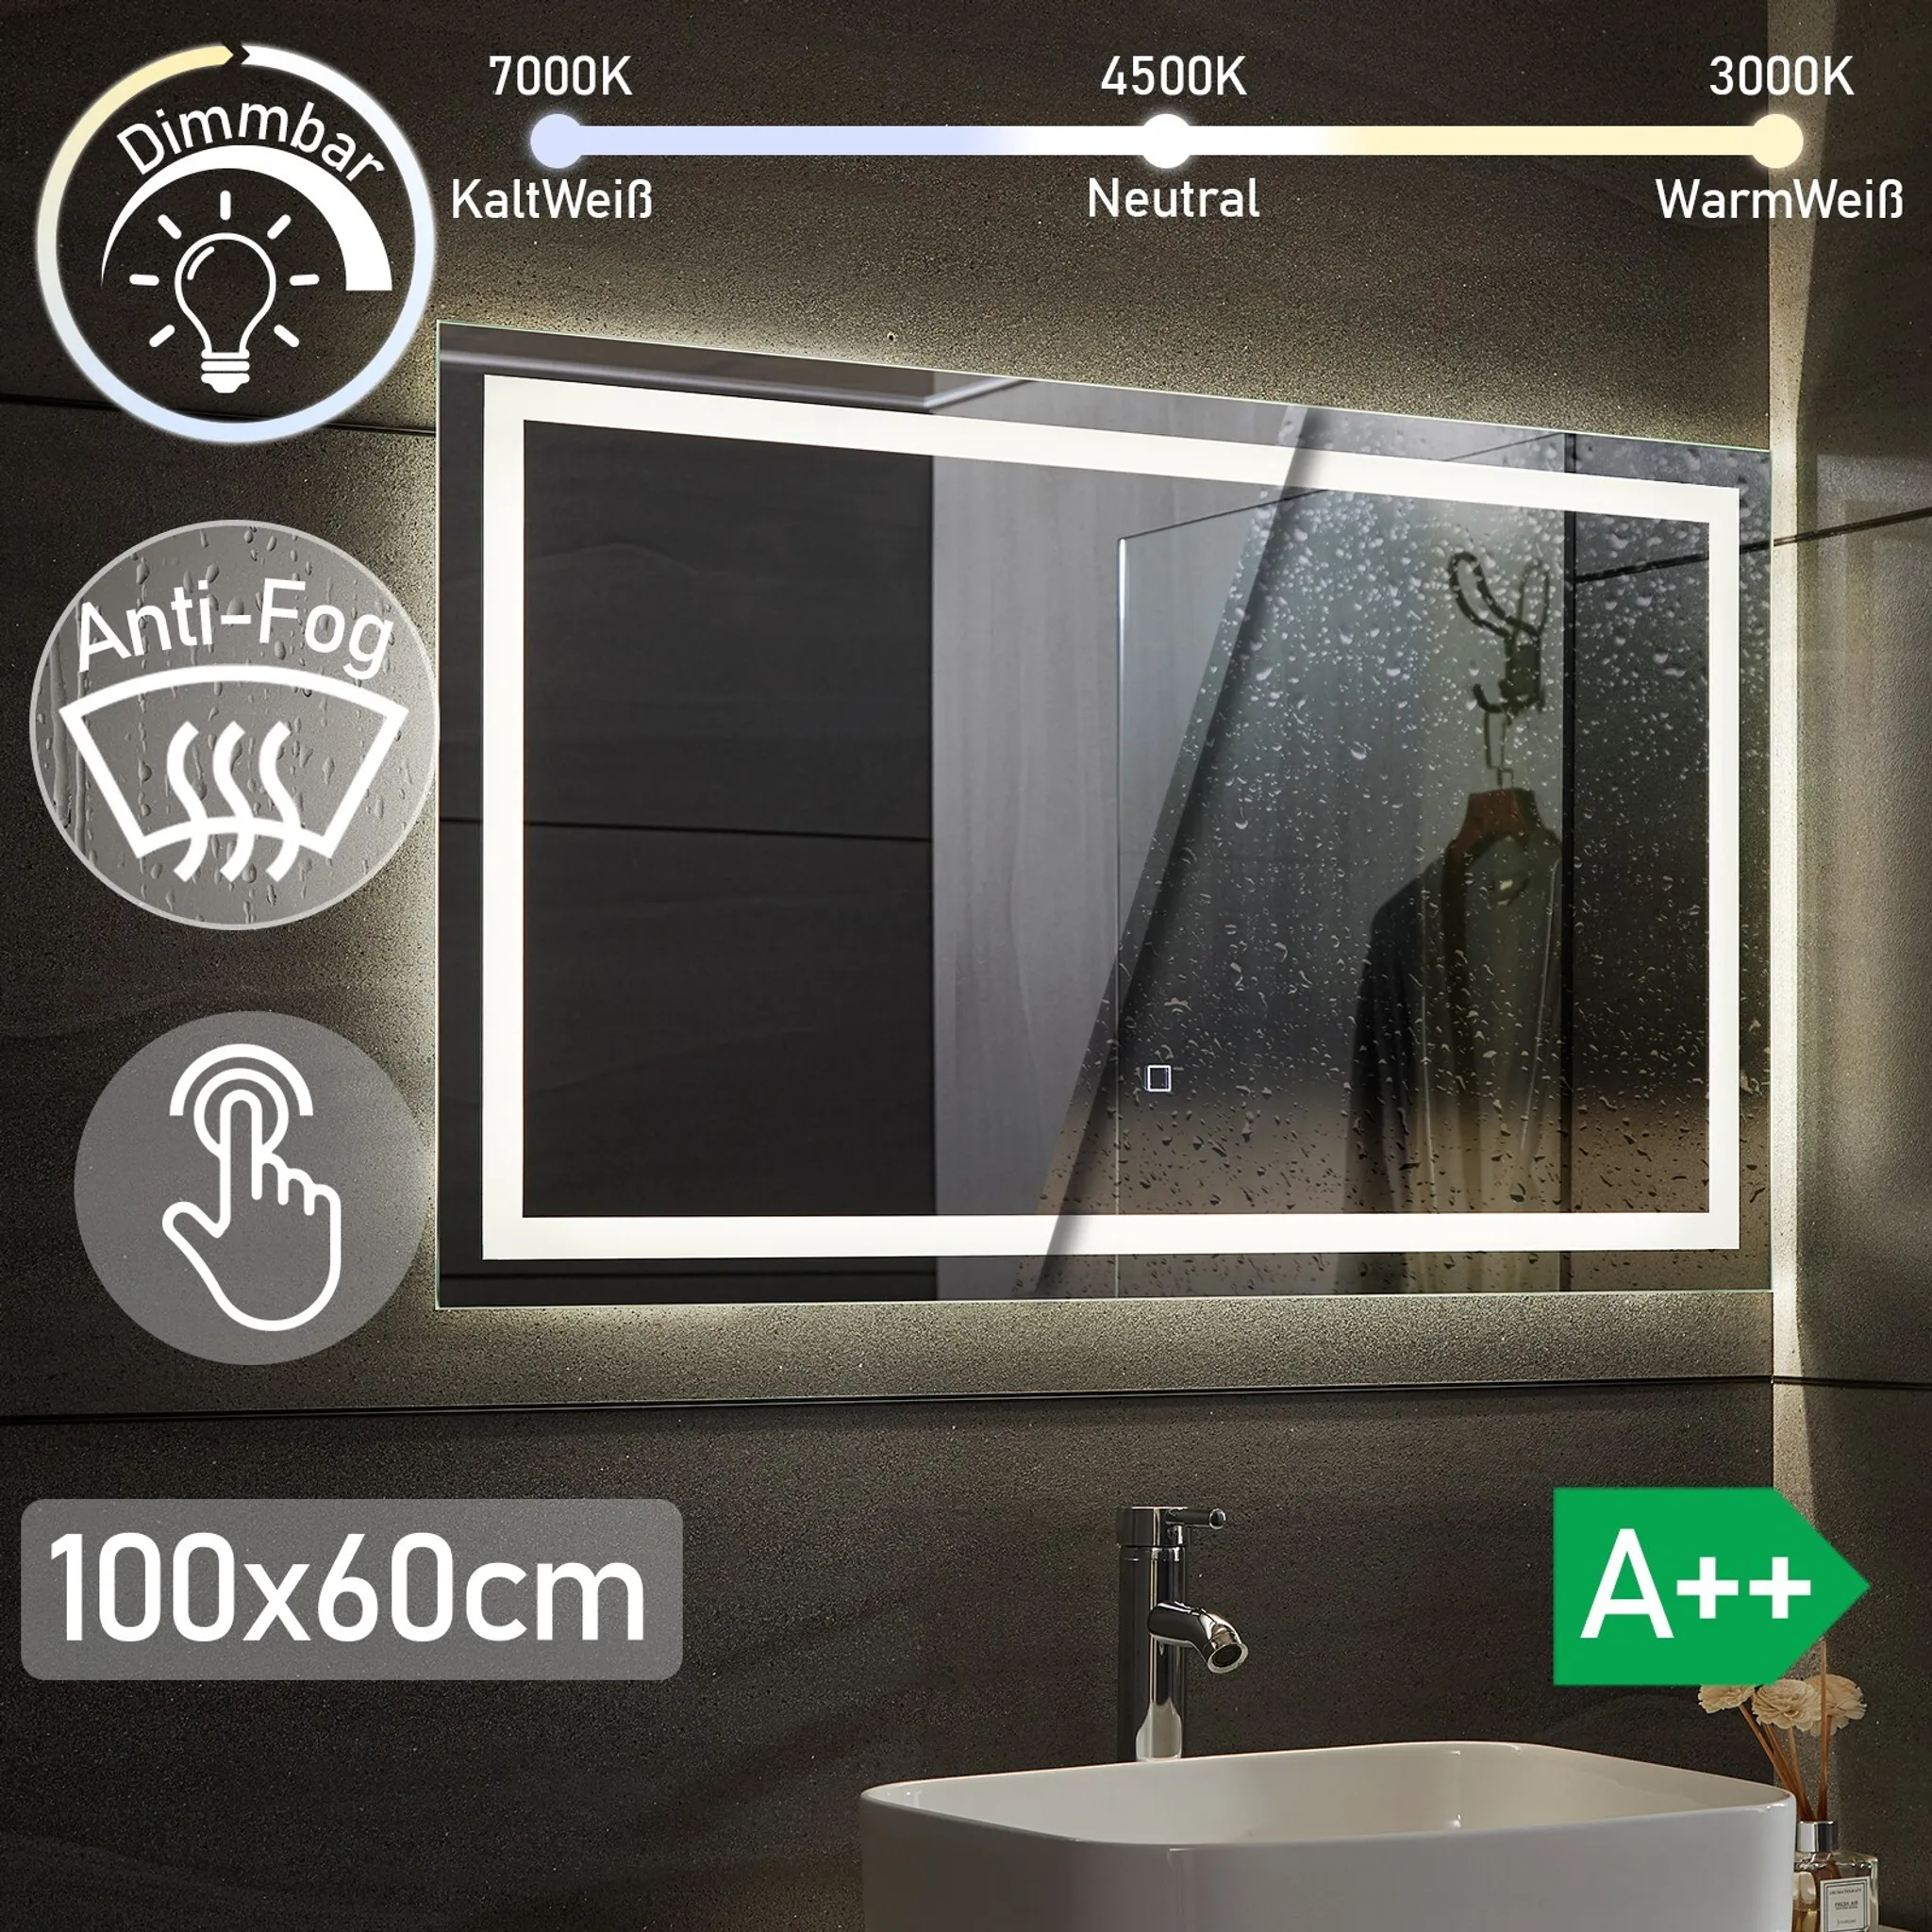 wandspiegel schwarz metall spiegel für bad badezimmer dusche badspiegel HD  Glas